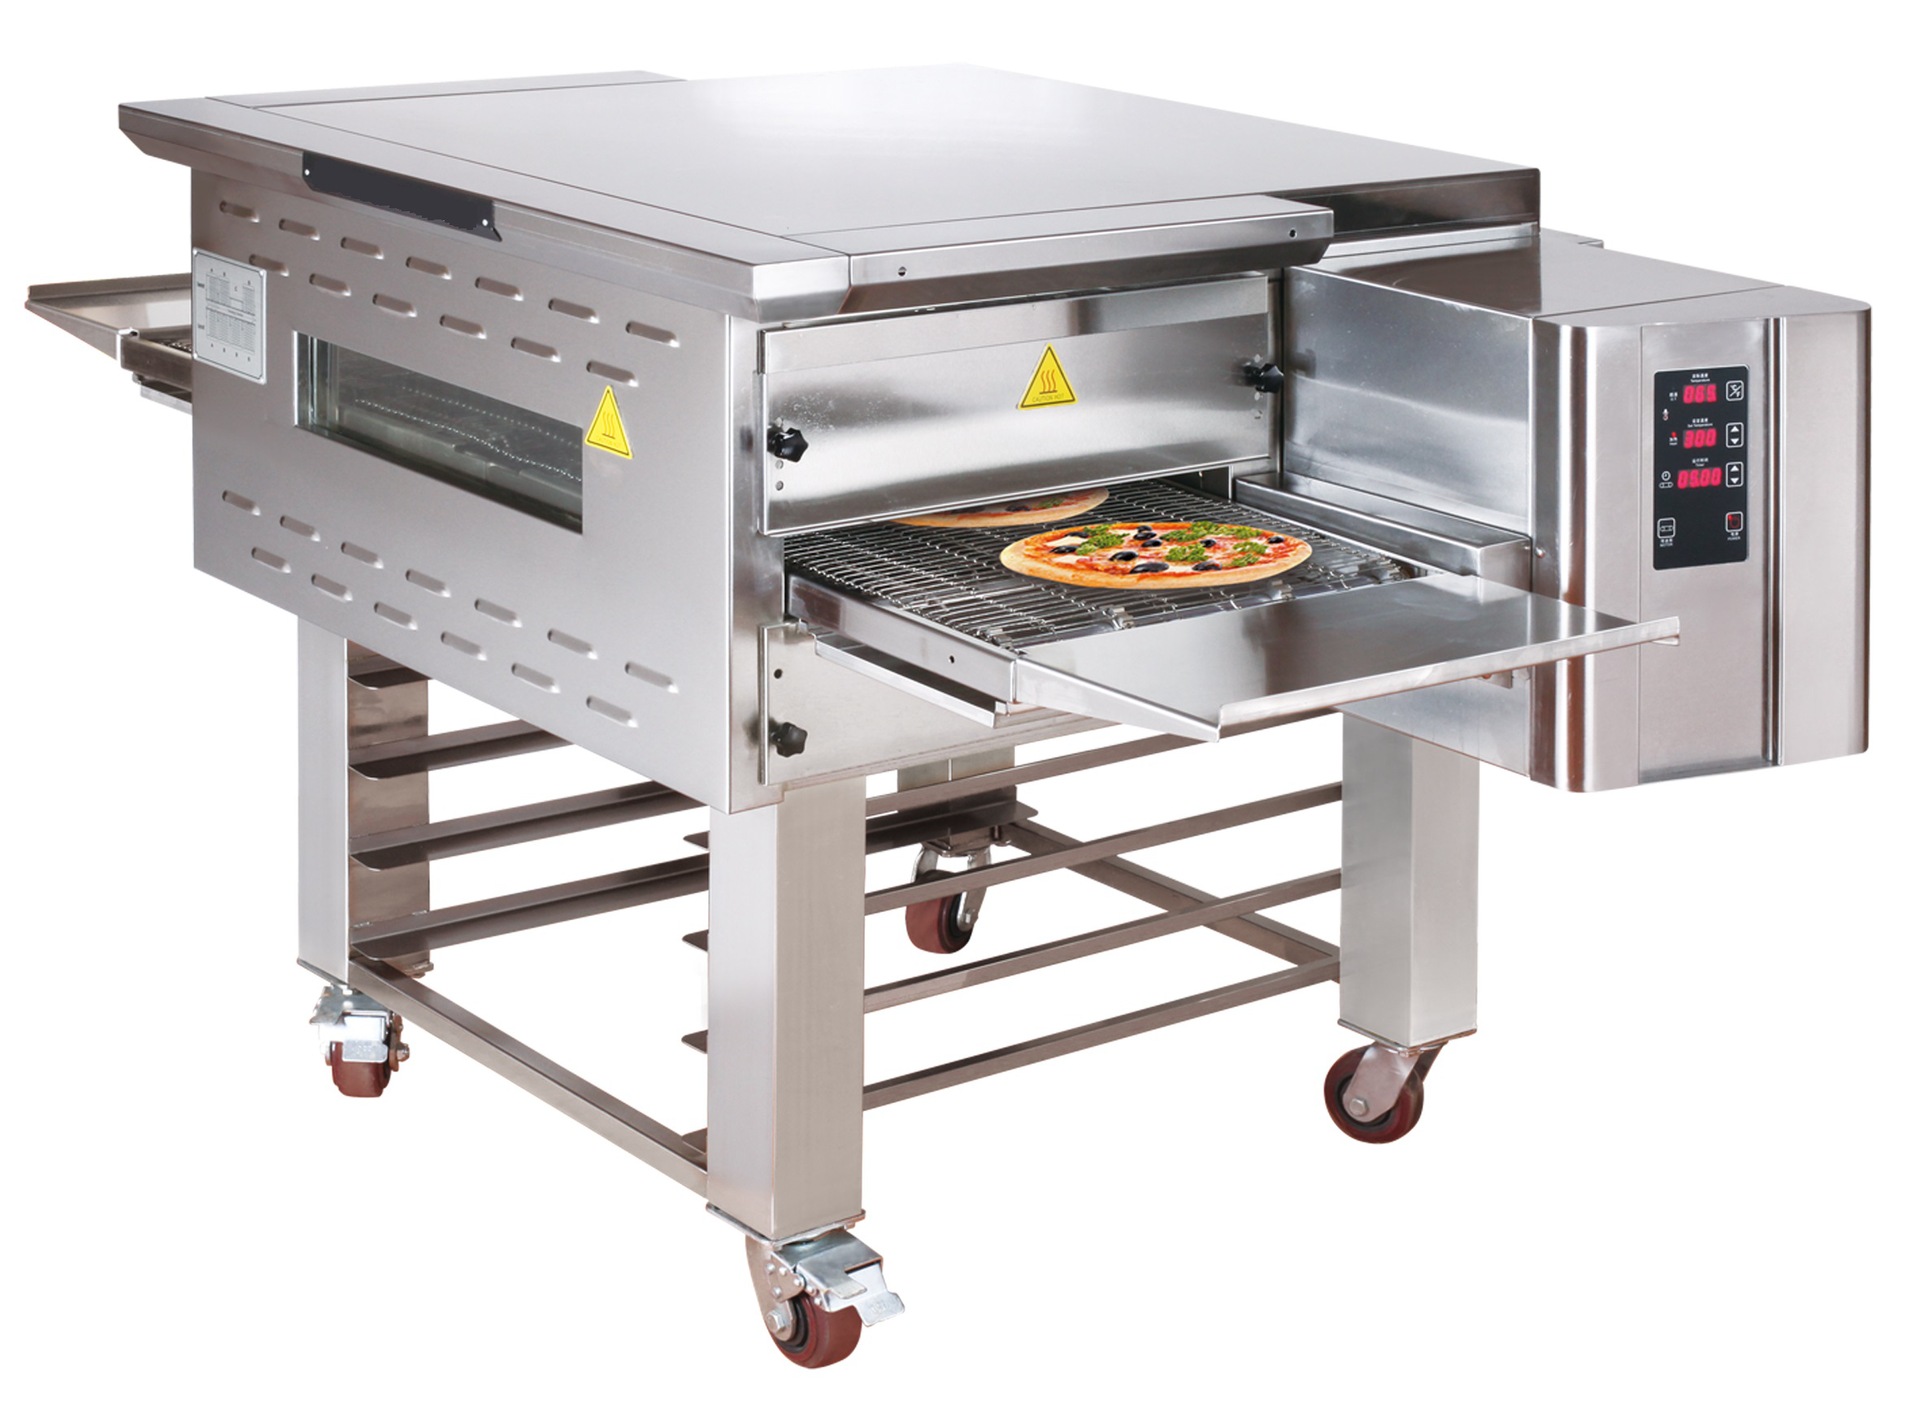 k 商用链式比萨烤炉 披萨链式烤箱 履带式双层烤炉 披萨炉厂家